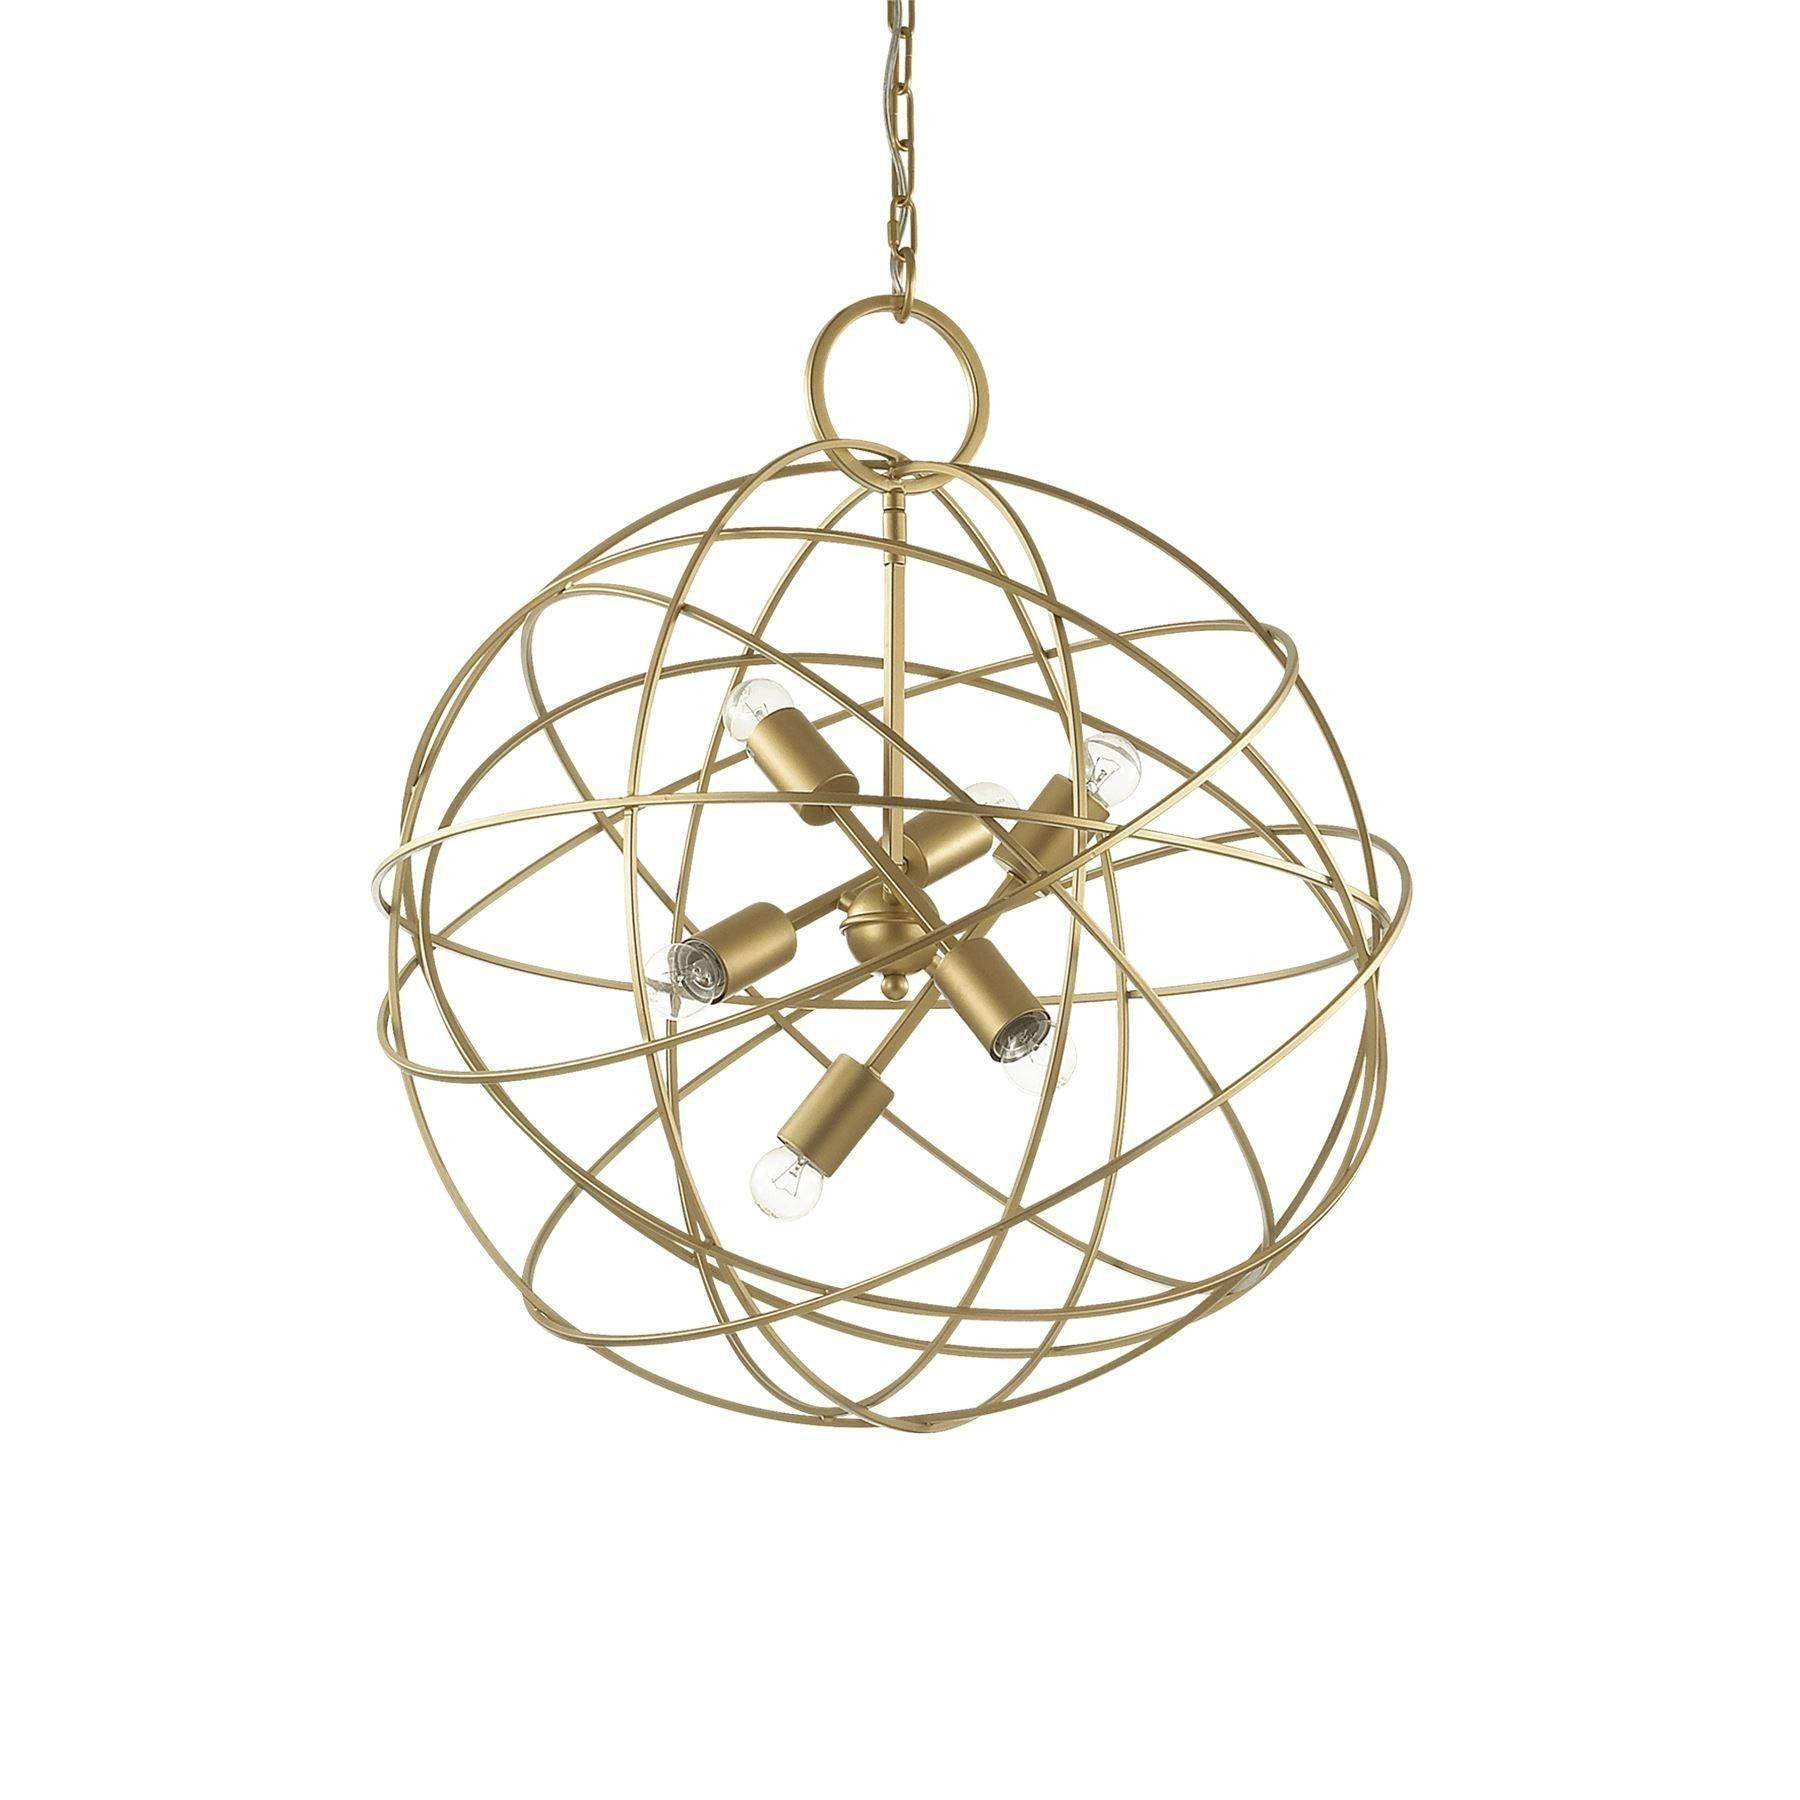 Konse 6 Light Spherical Ceiling Pendant Gold - image 1